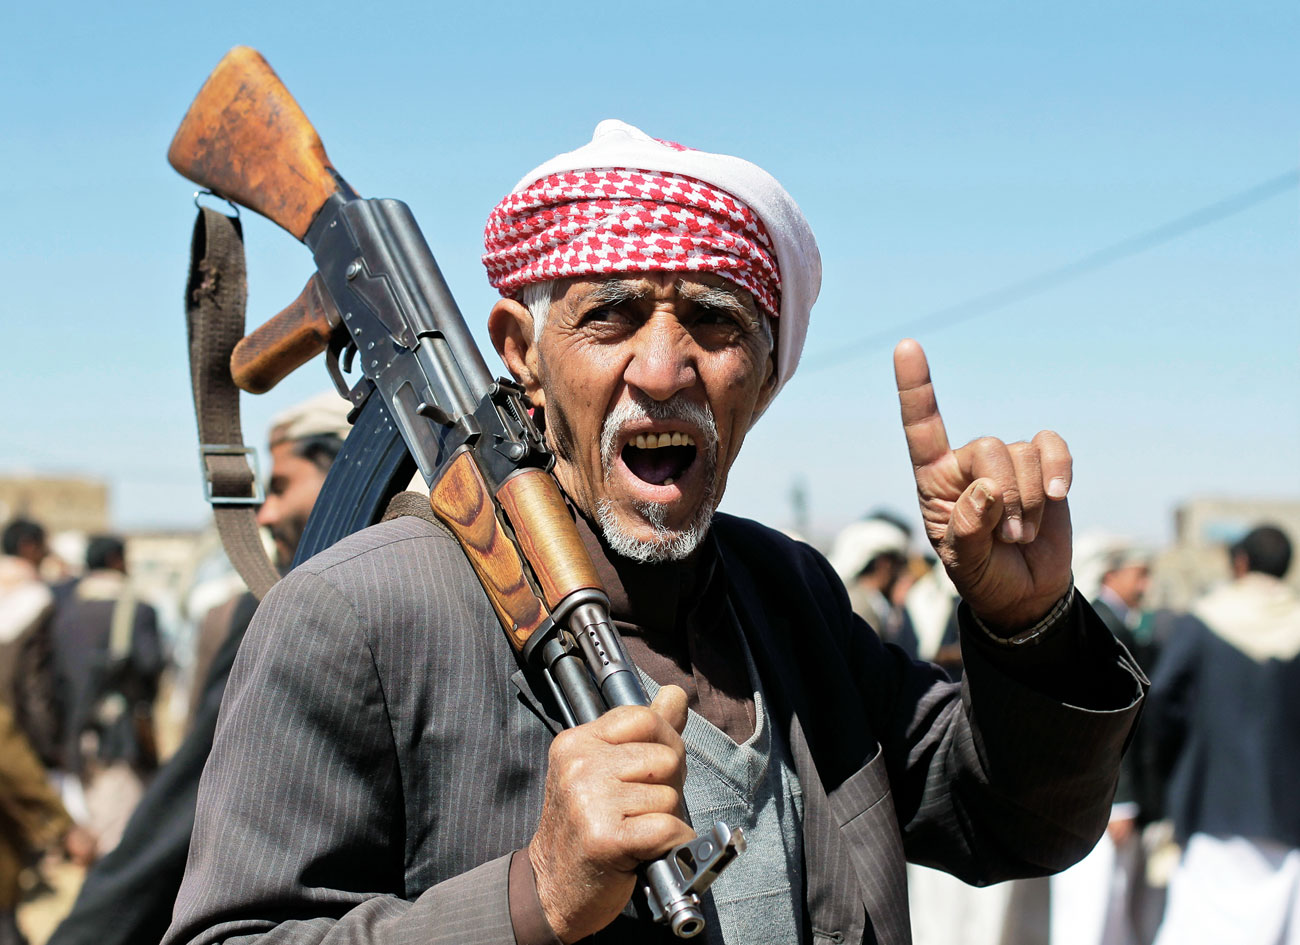 Egy jemeni síita harcos törzsi gyűlésre érkezik. A felnőttek válogathatnak a fegyverek között